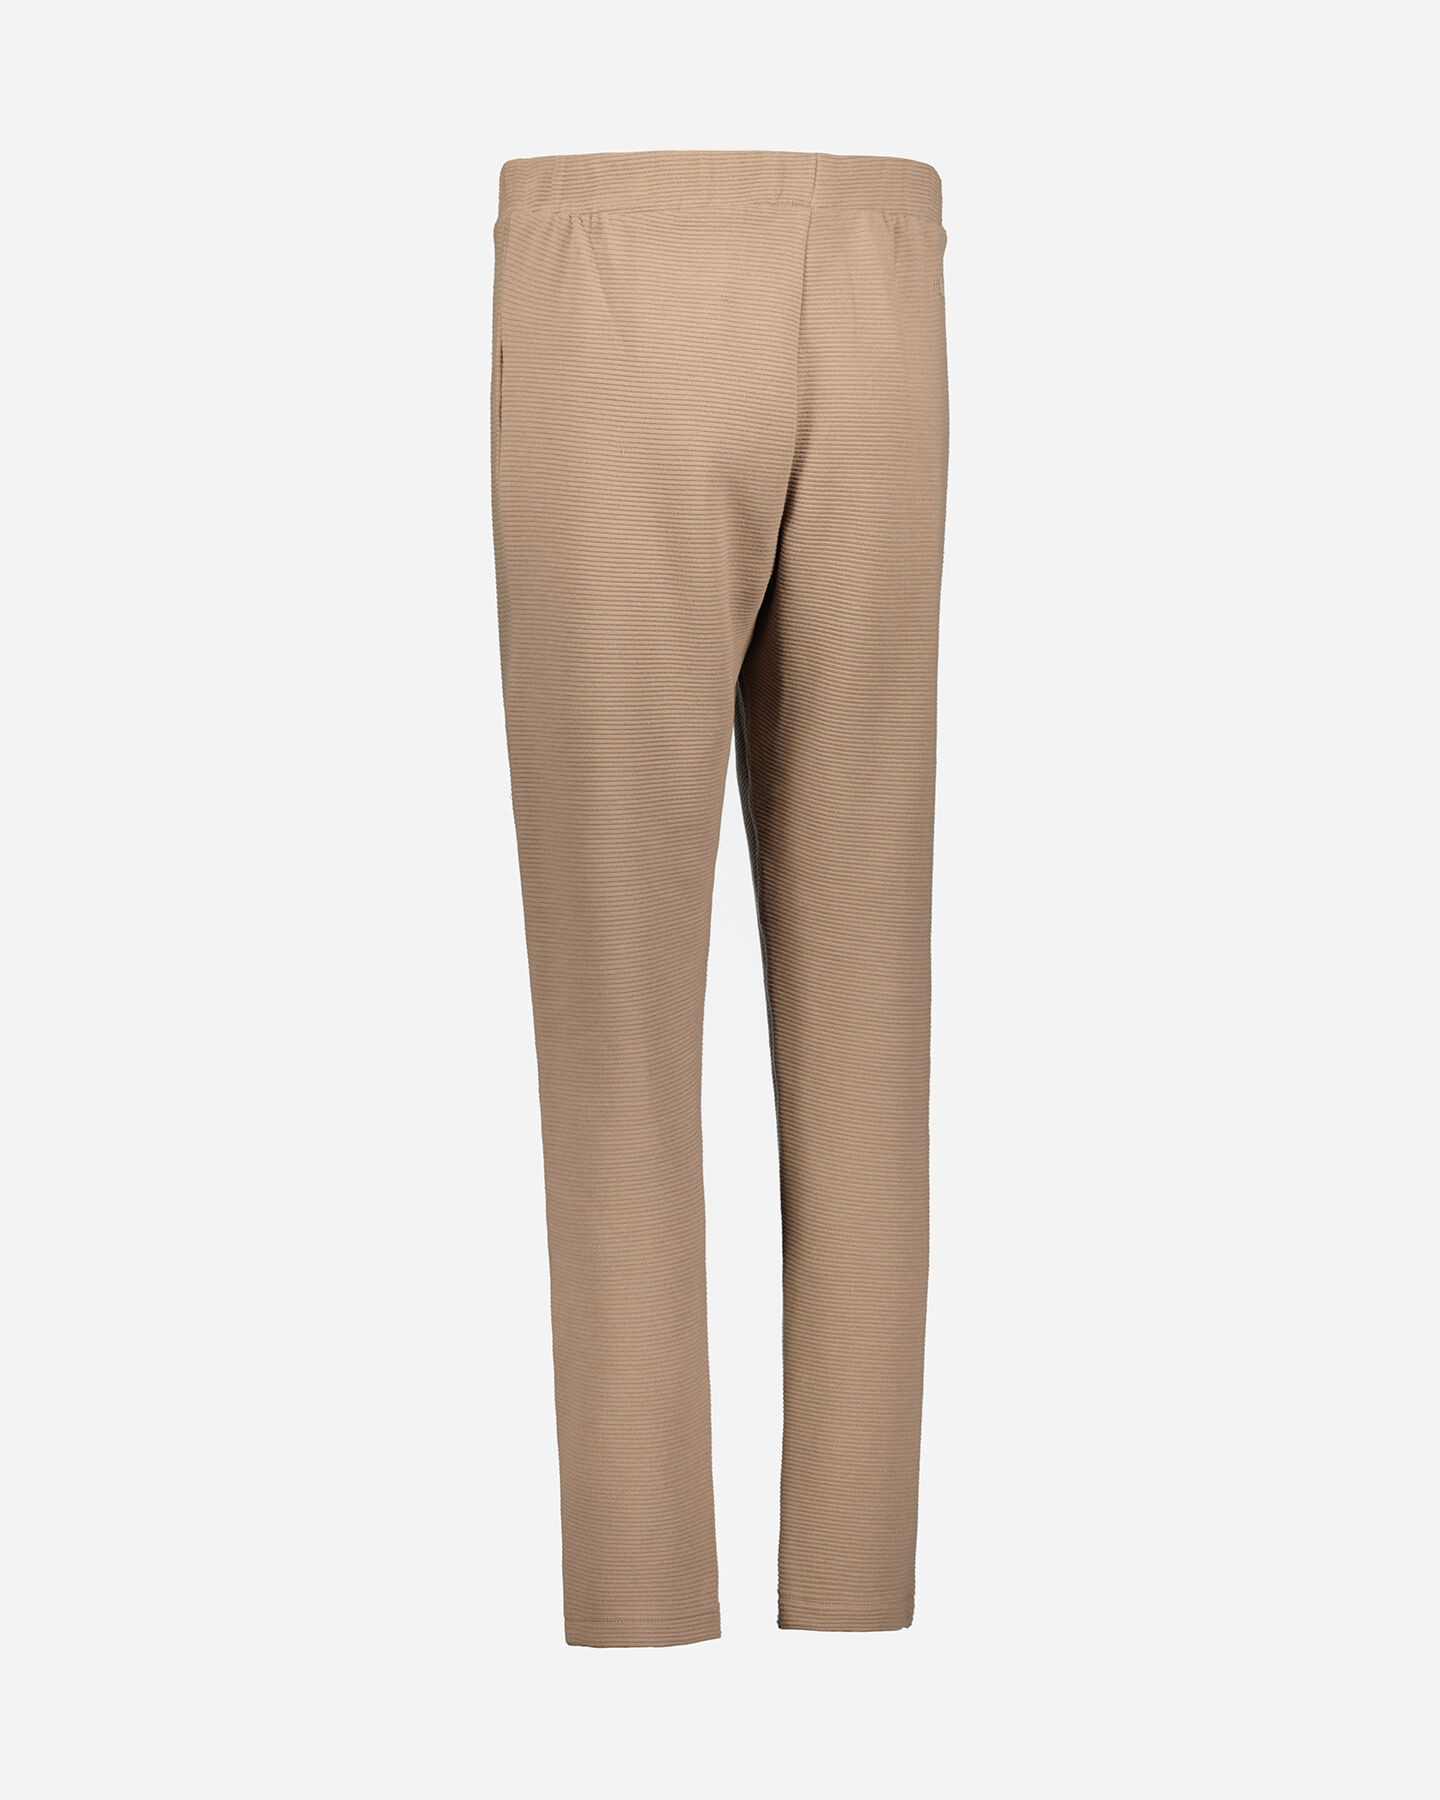  Pantalone ADMIRAL CLASSIC W S4119471|168|S scatto 2